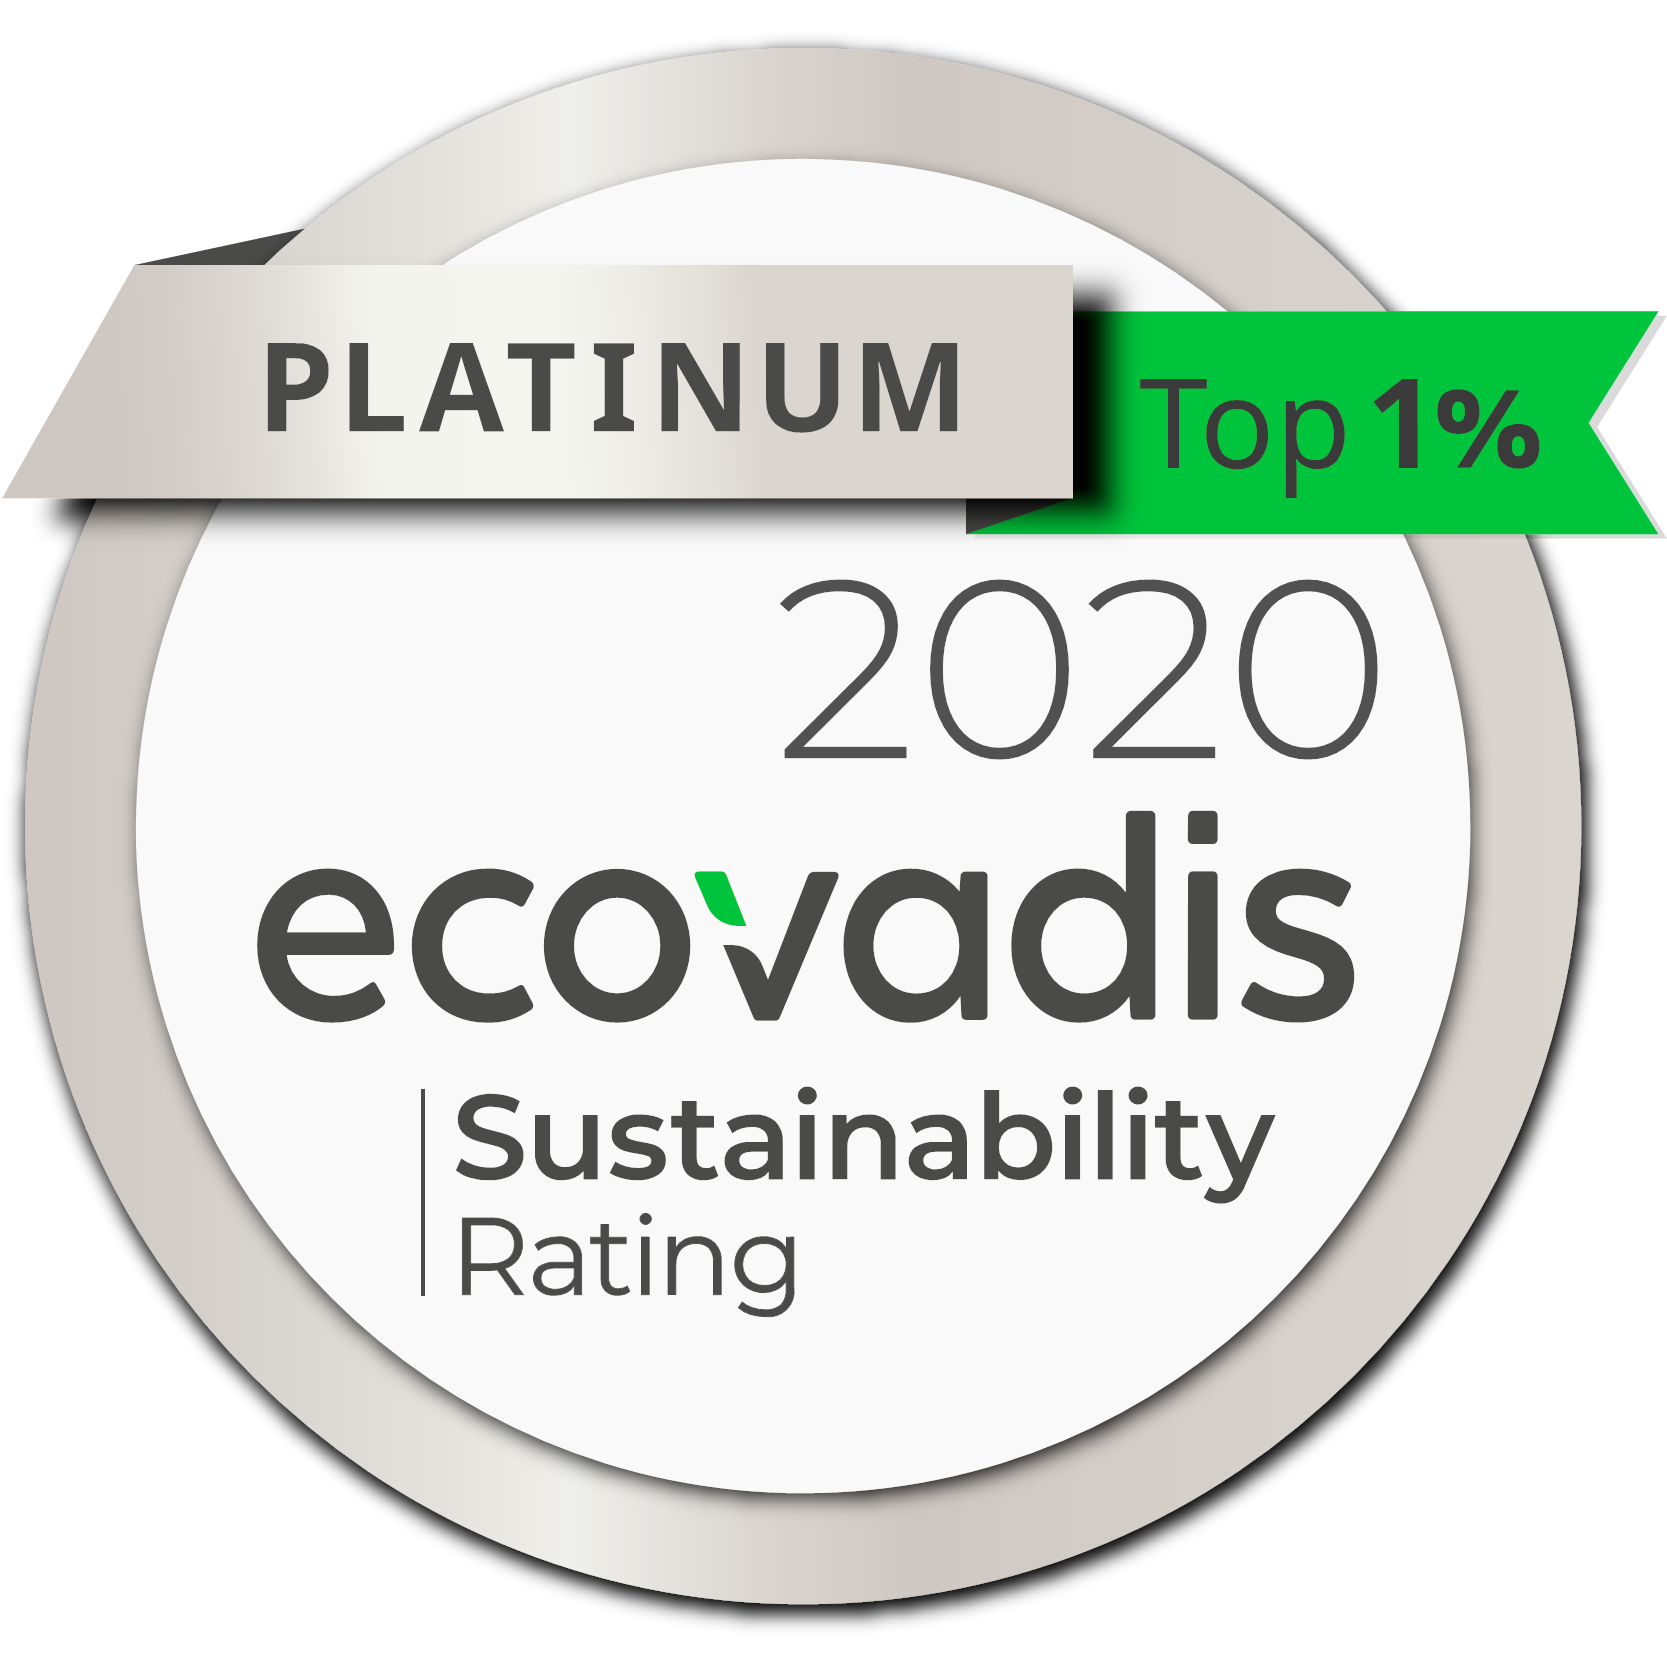 Ecovadis top 1% platinum sustainability rating award logo